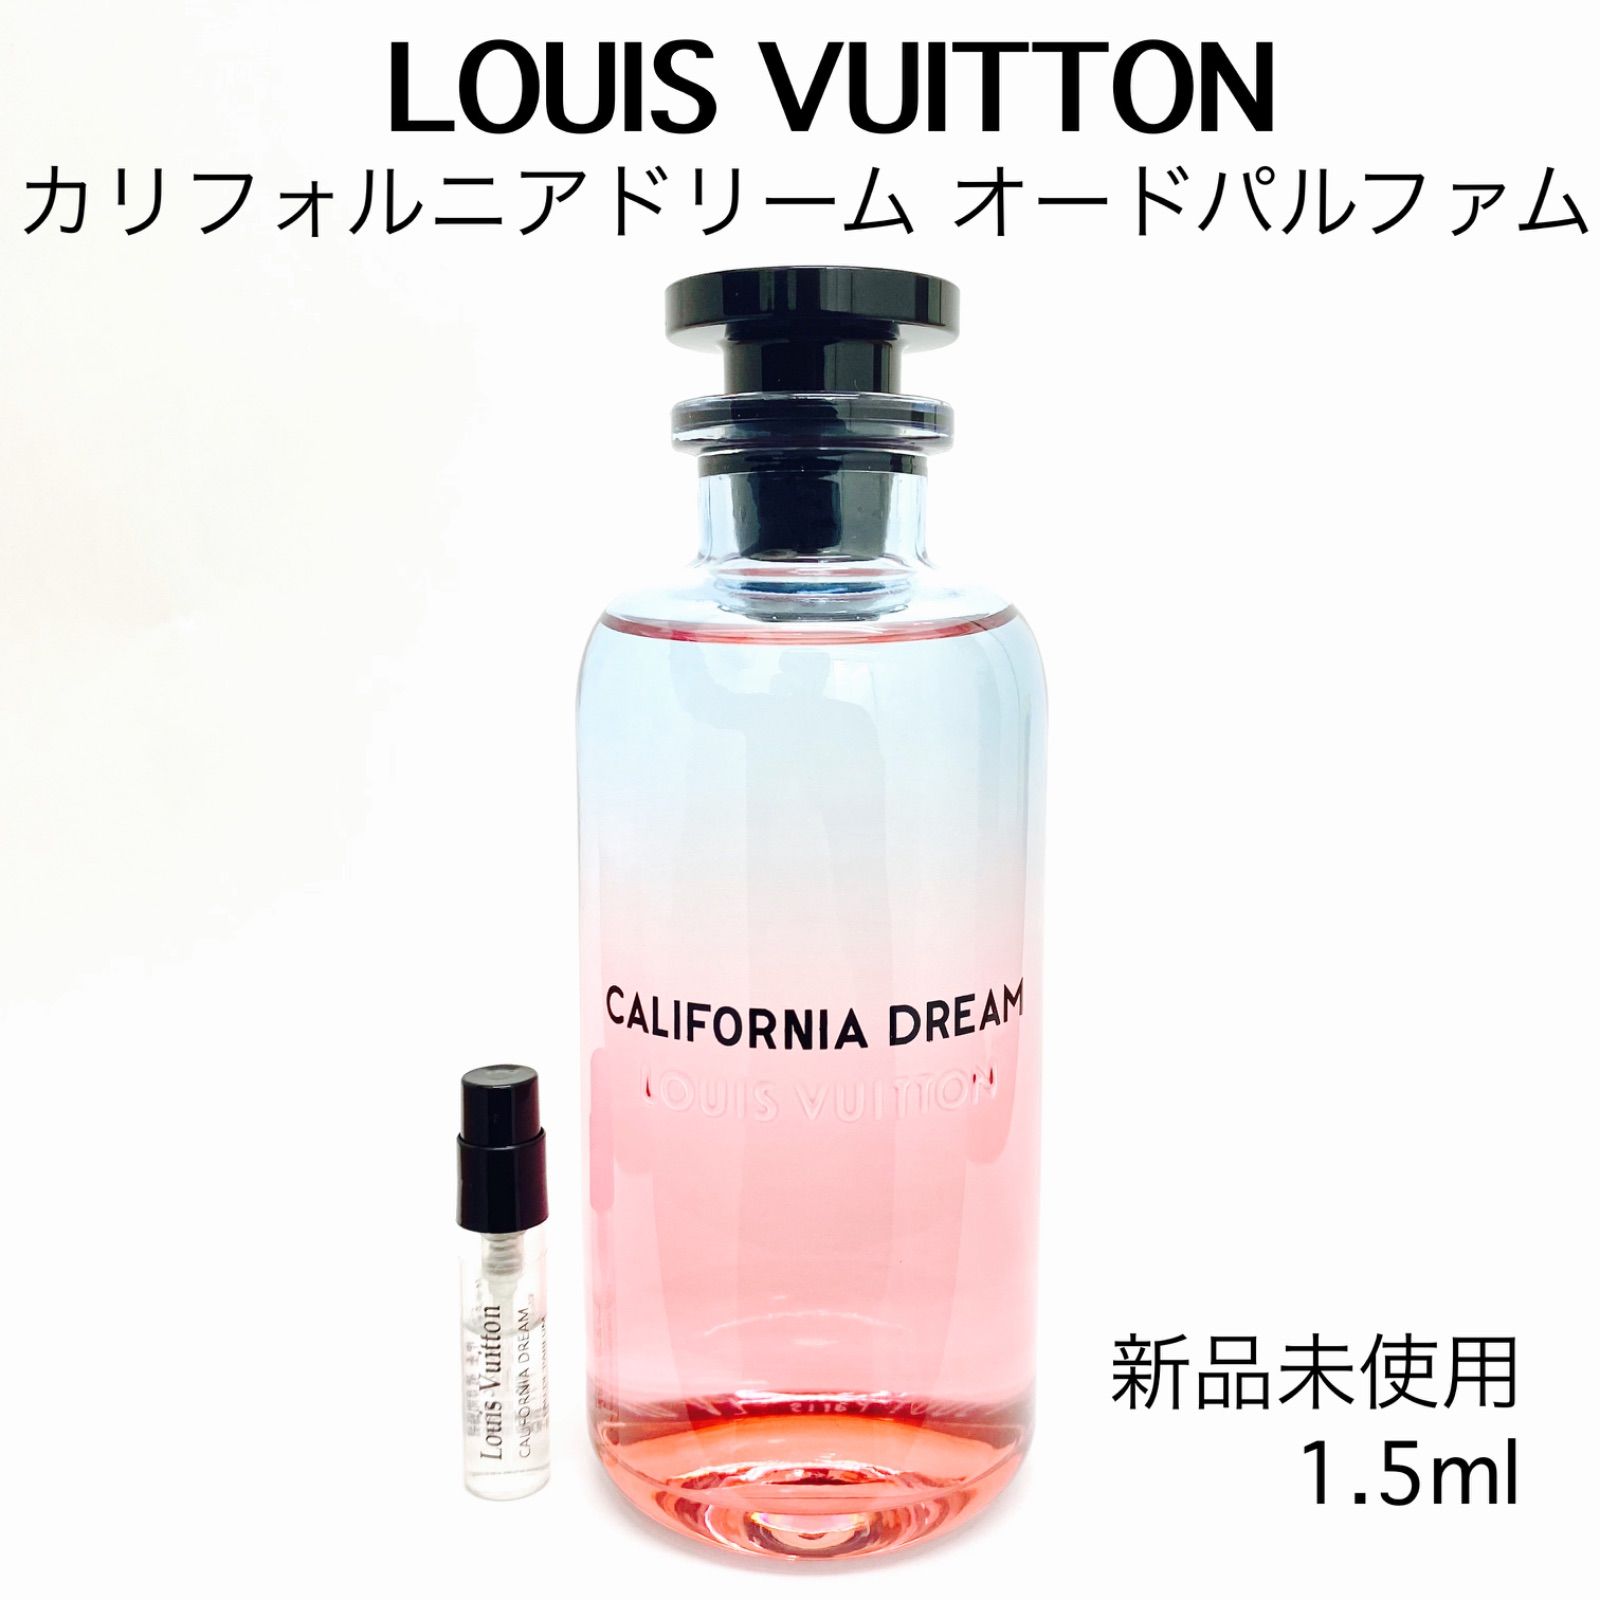 新品未使用、未開封のルイ・ヴィトンのサンプル2本とカリフォルニアドリーム香水